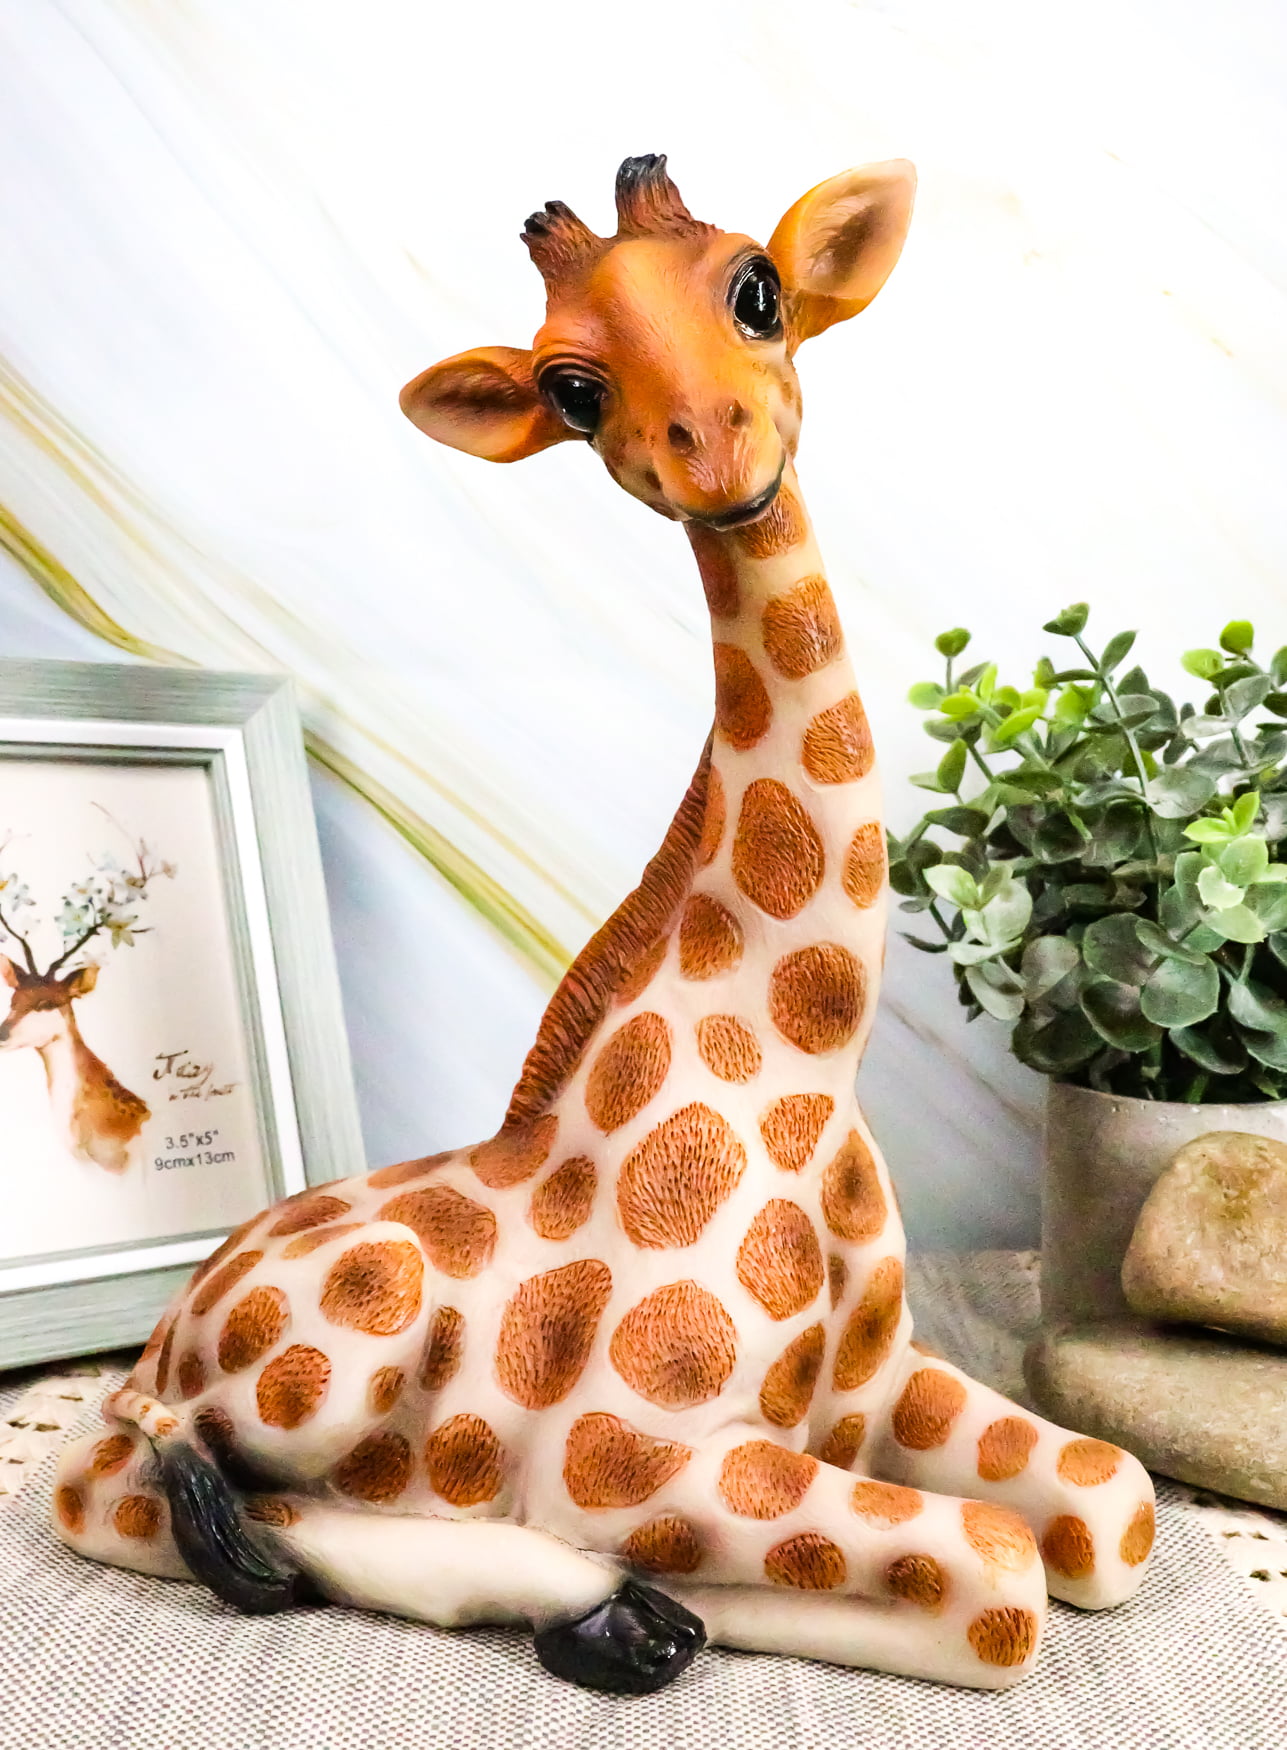 Gift for Giraffe Lovers Africa Decor Cute Giraffes Wedding Gift for Home Personalized Giraffe Decor Gift For Couple Safari Decor